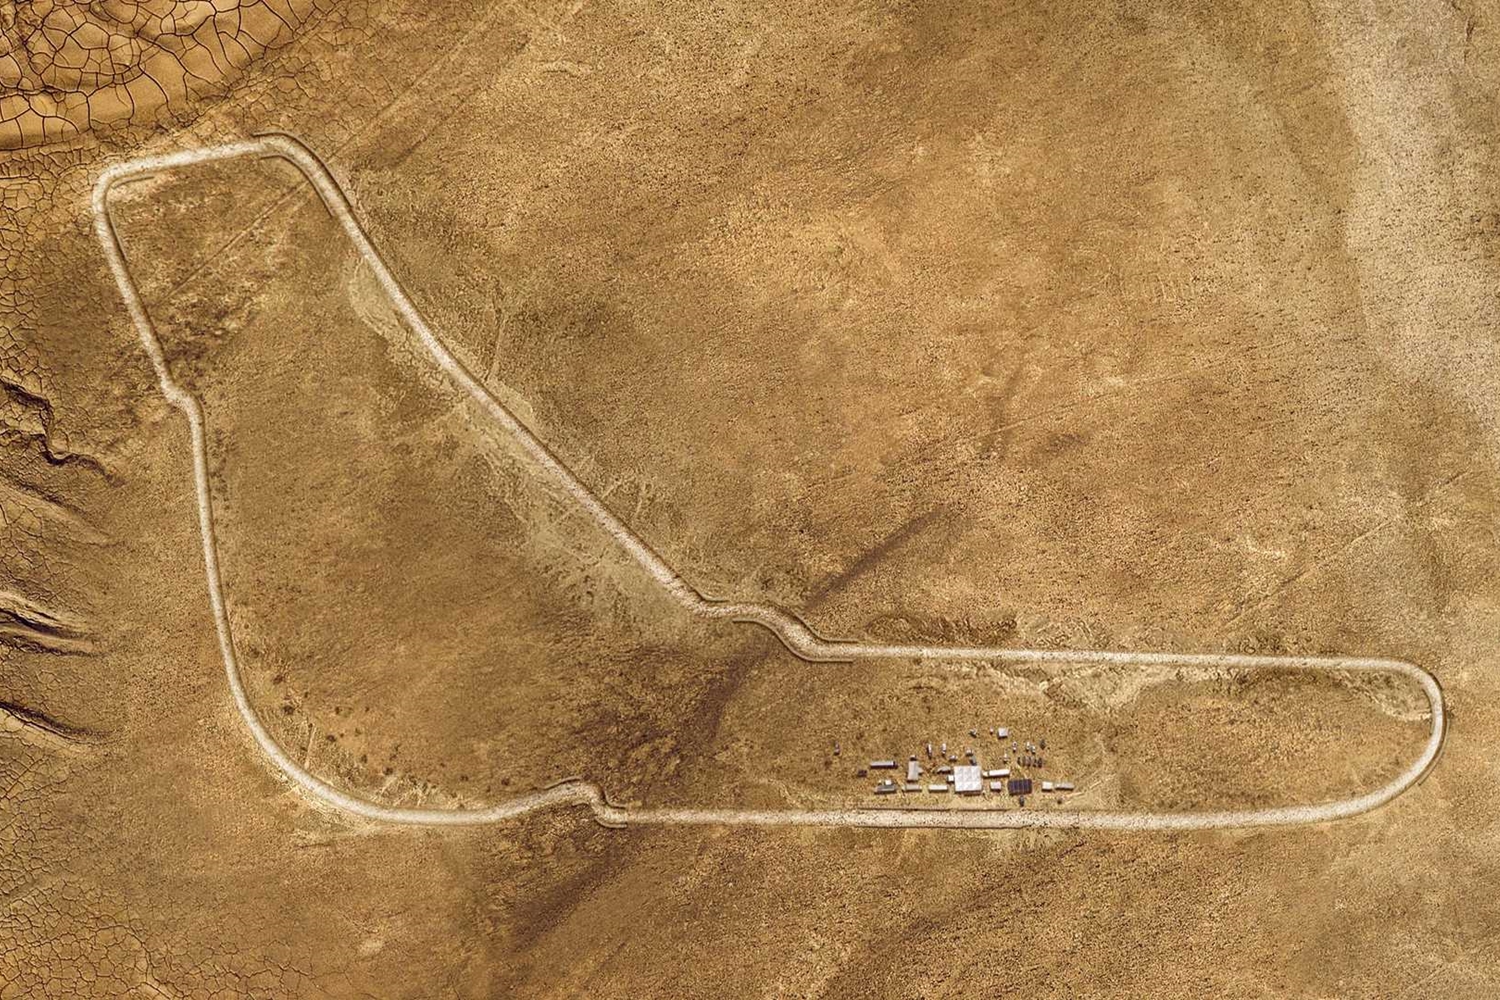 A BMW megépítette a monzai versenypályát, méghozzá sivatagban! 6